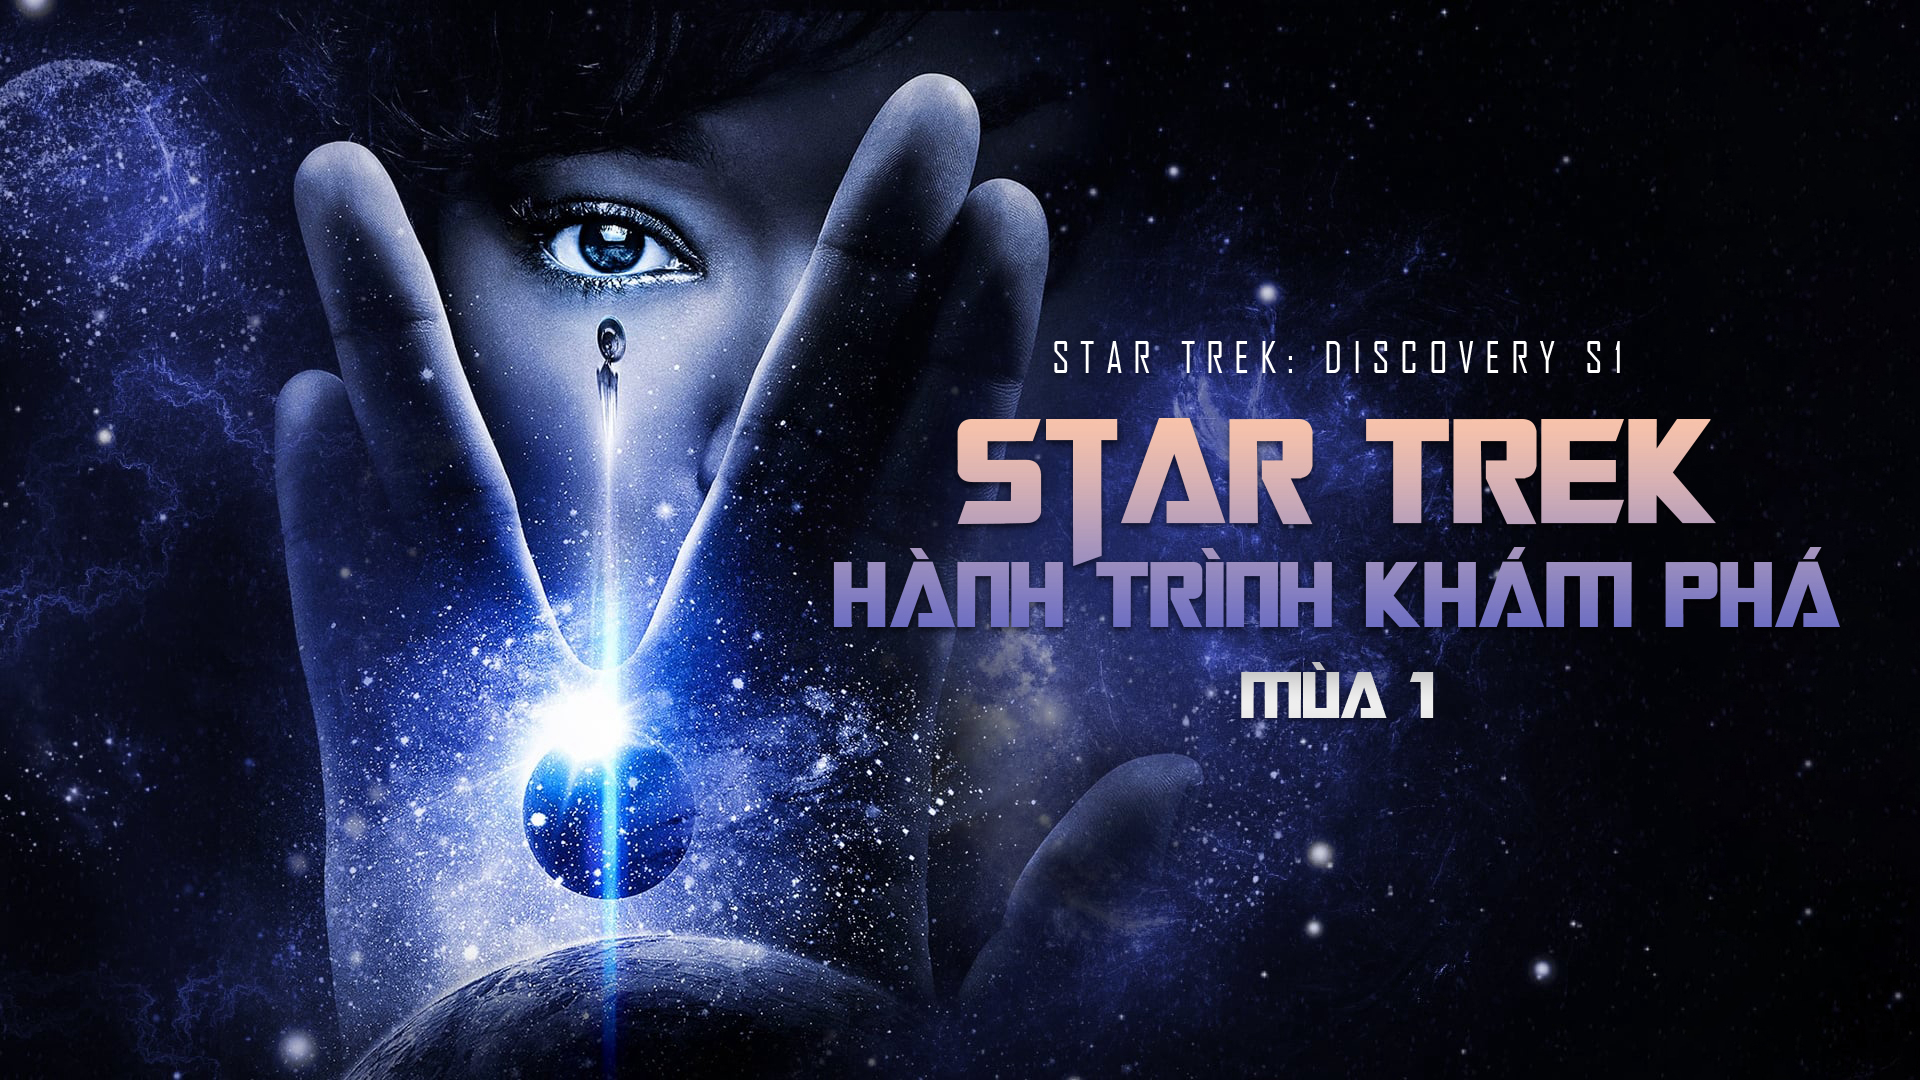 Star Trek: Discovery S1 / Star Trek: Discovery S1 (2018)